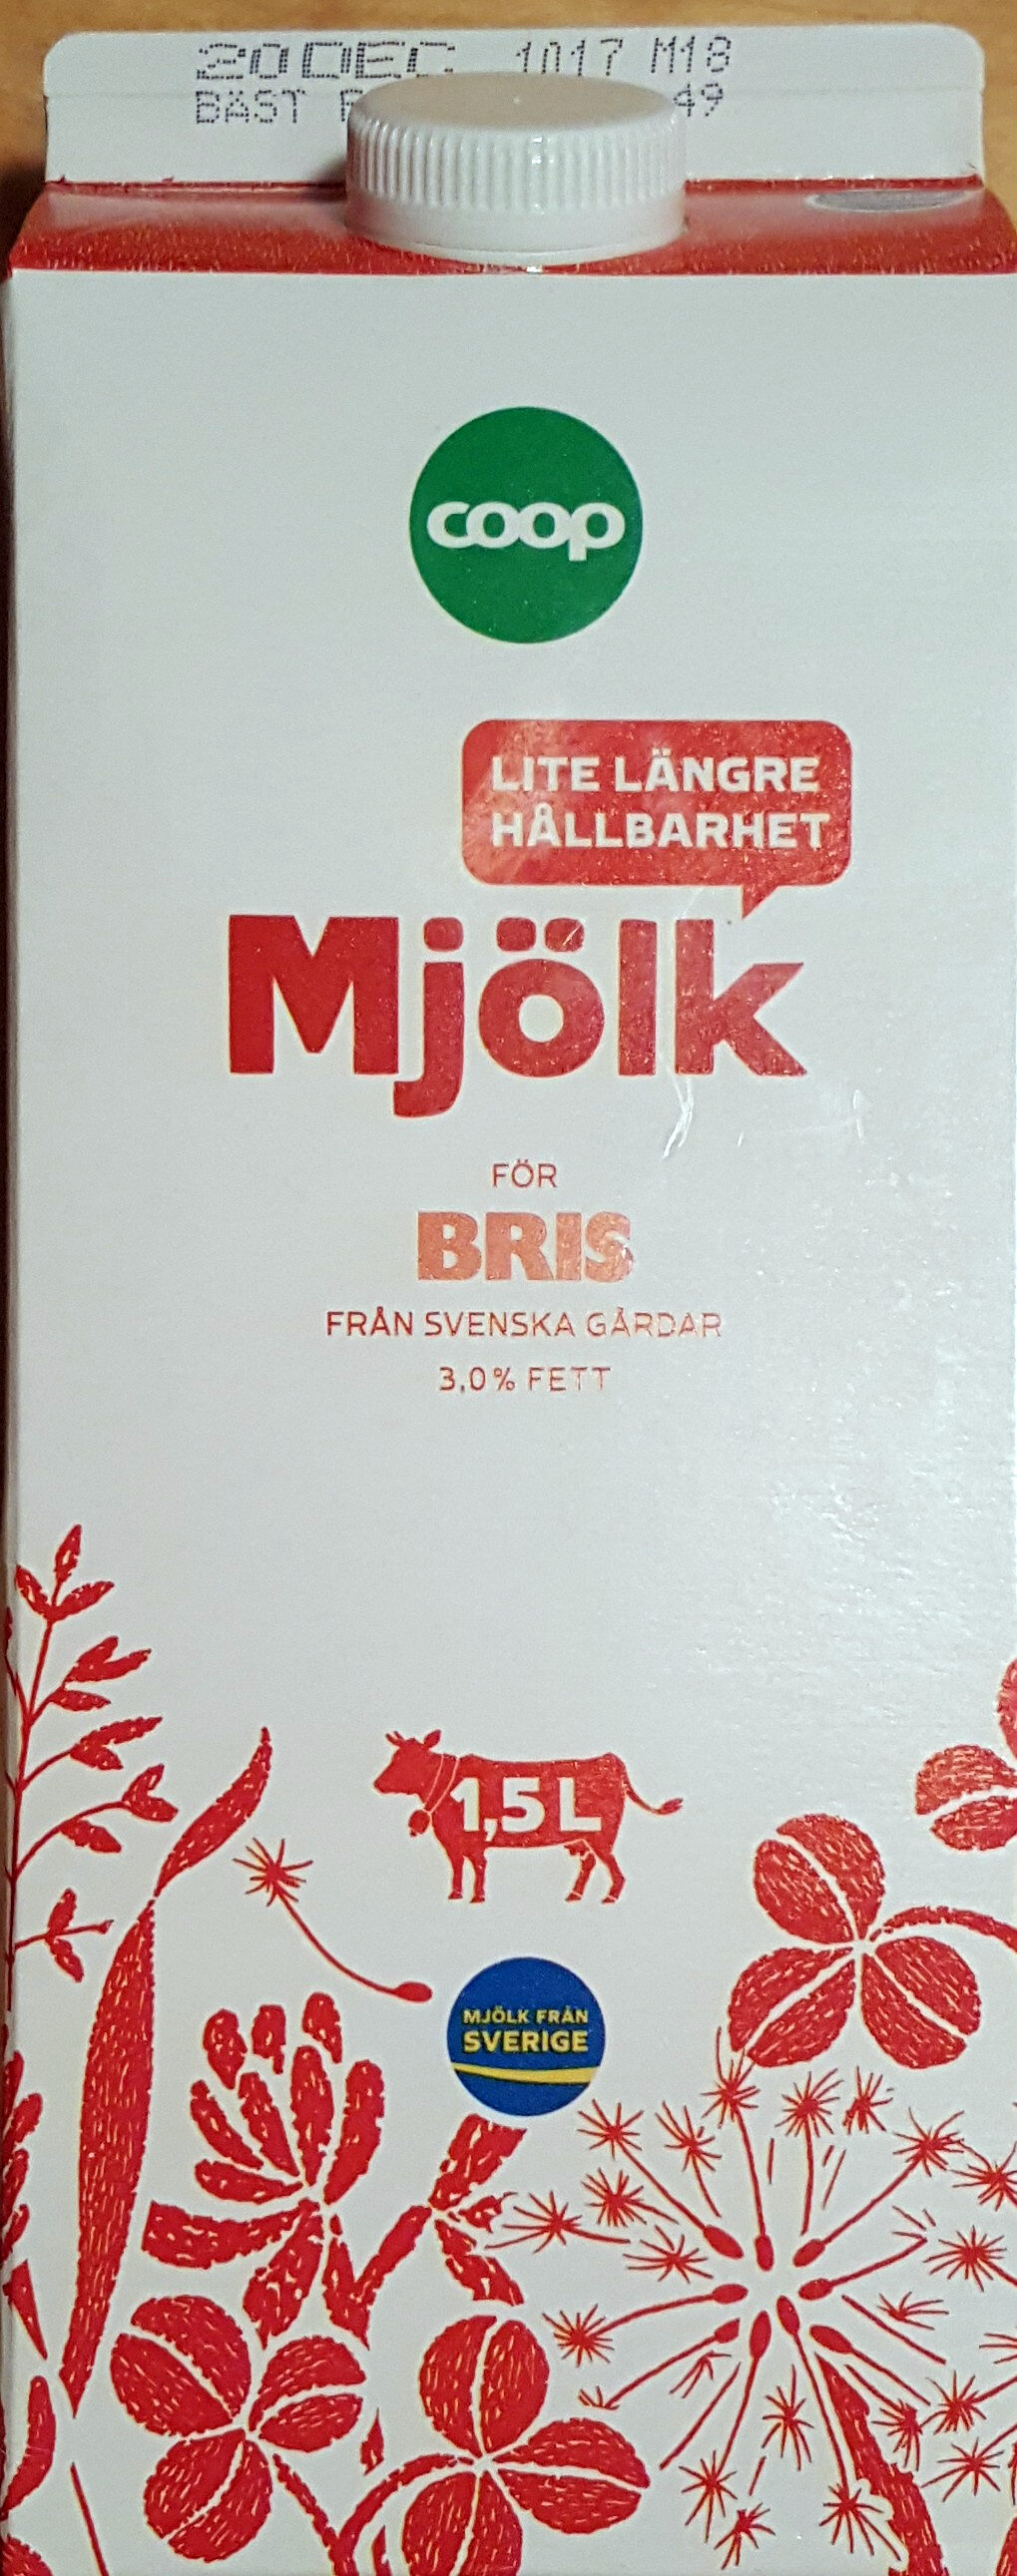 Mjölk - lite längre hållbarhet - Produkt - sv